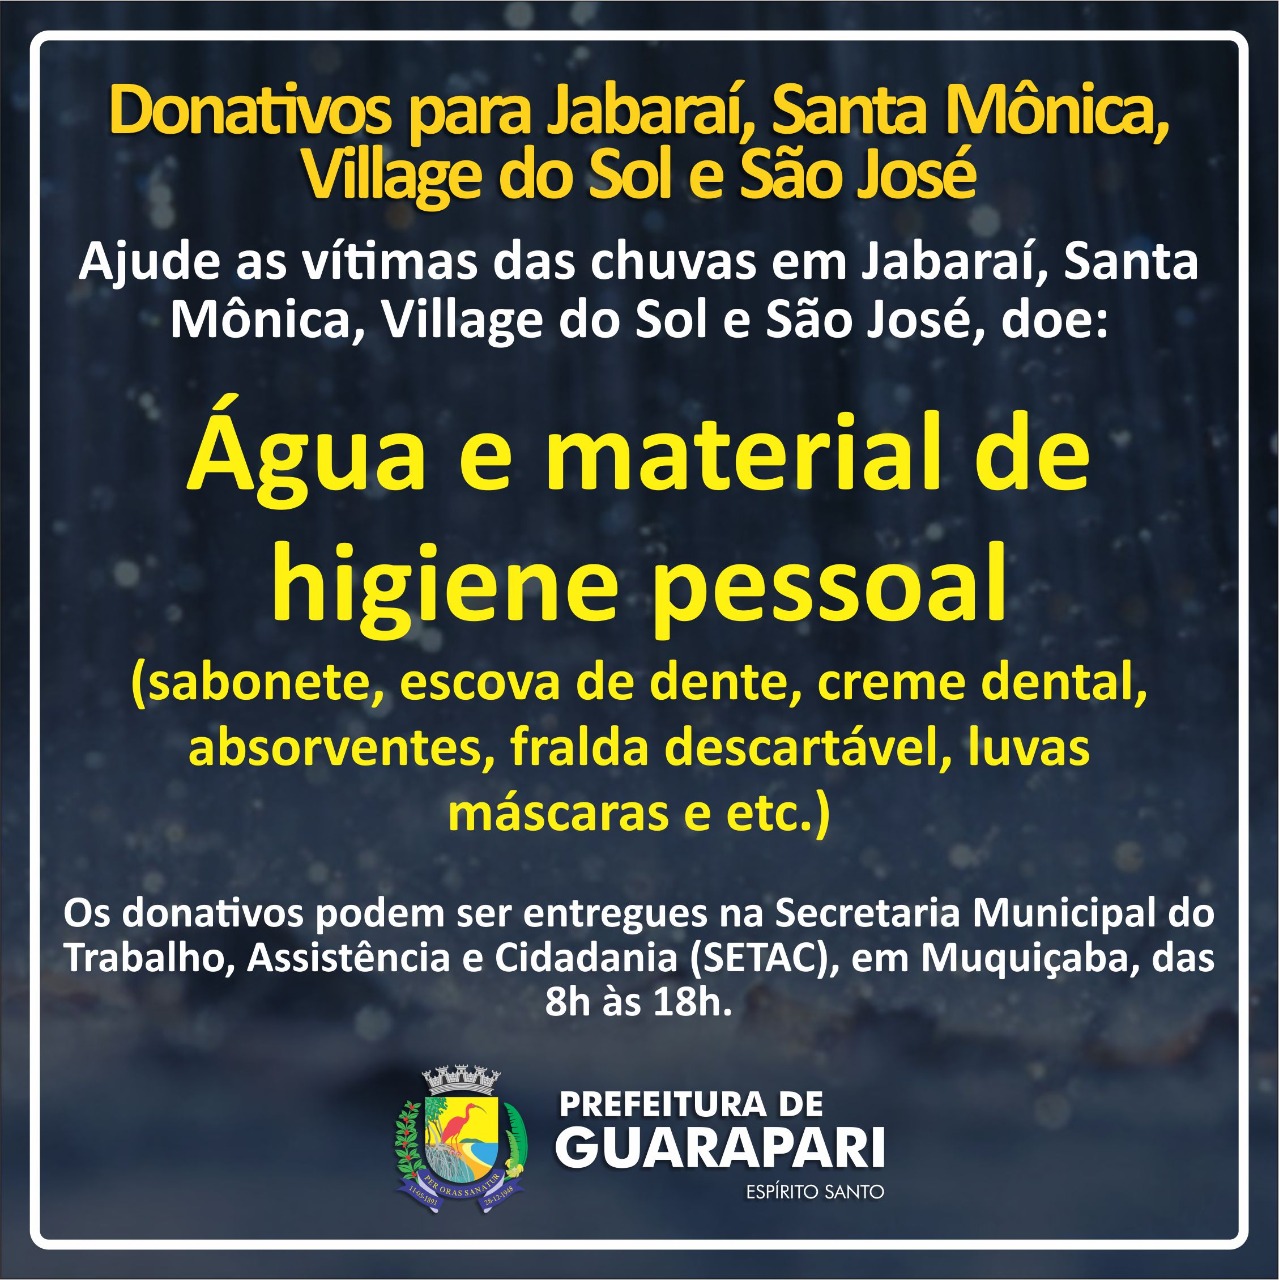 Prefeitura de Guarapari arrecada donativos para vítimas das chuvas no município 